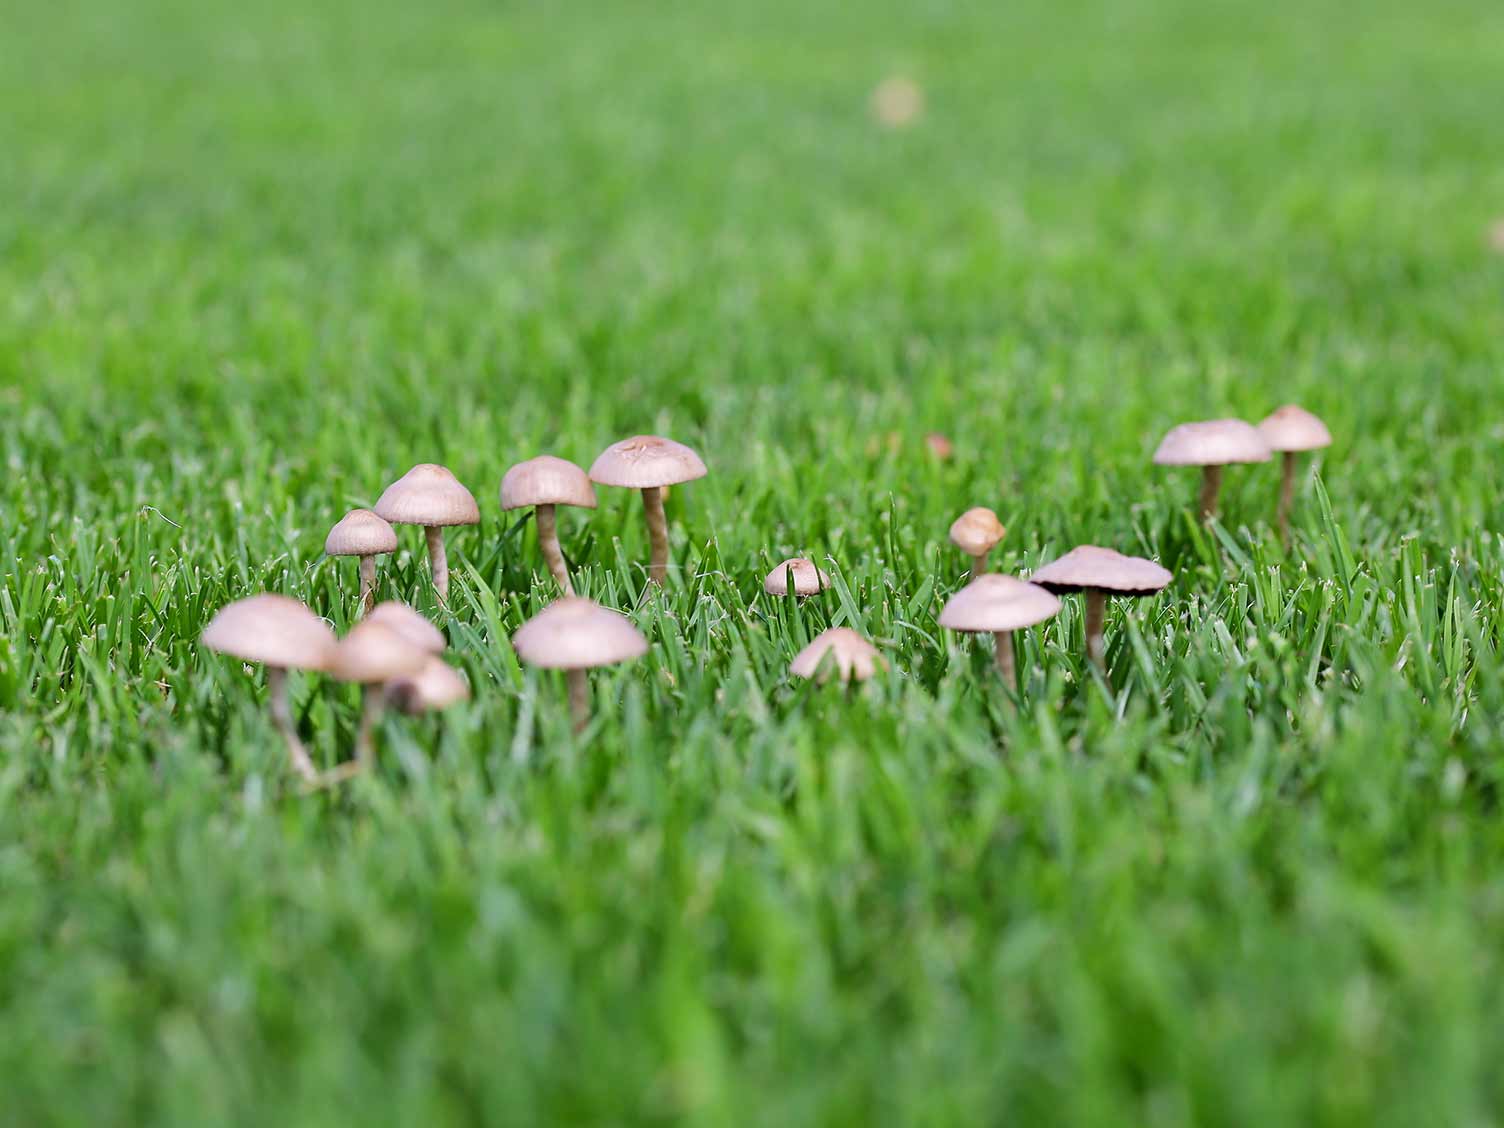 UK mushrooms growing in lawn